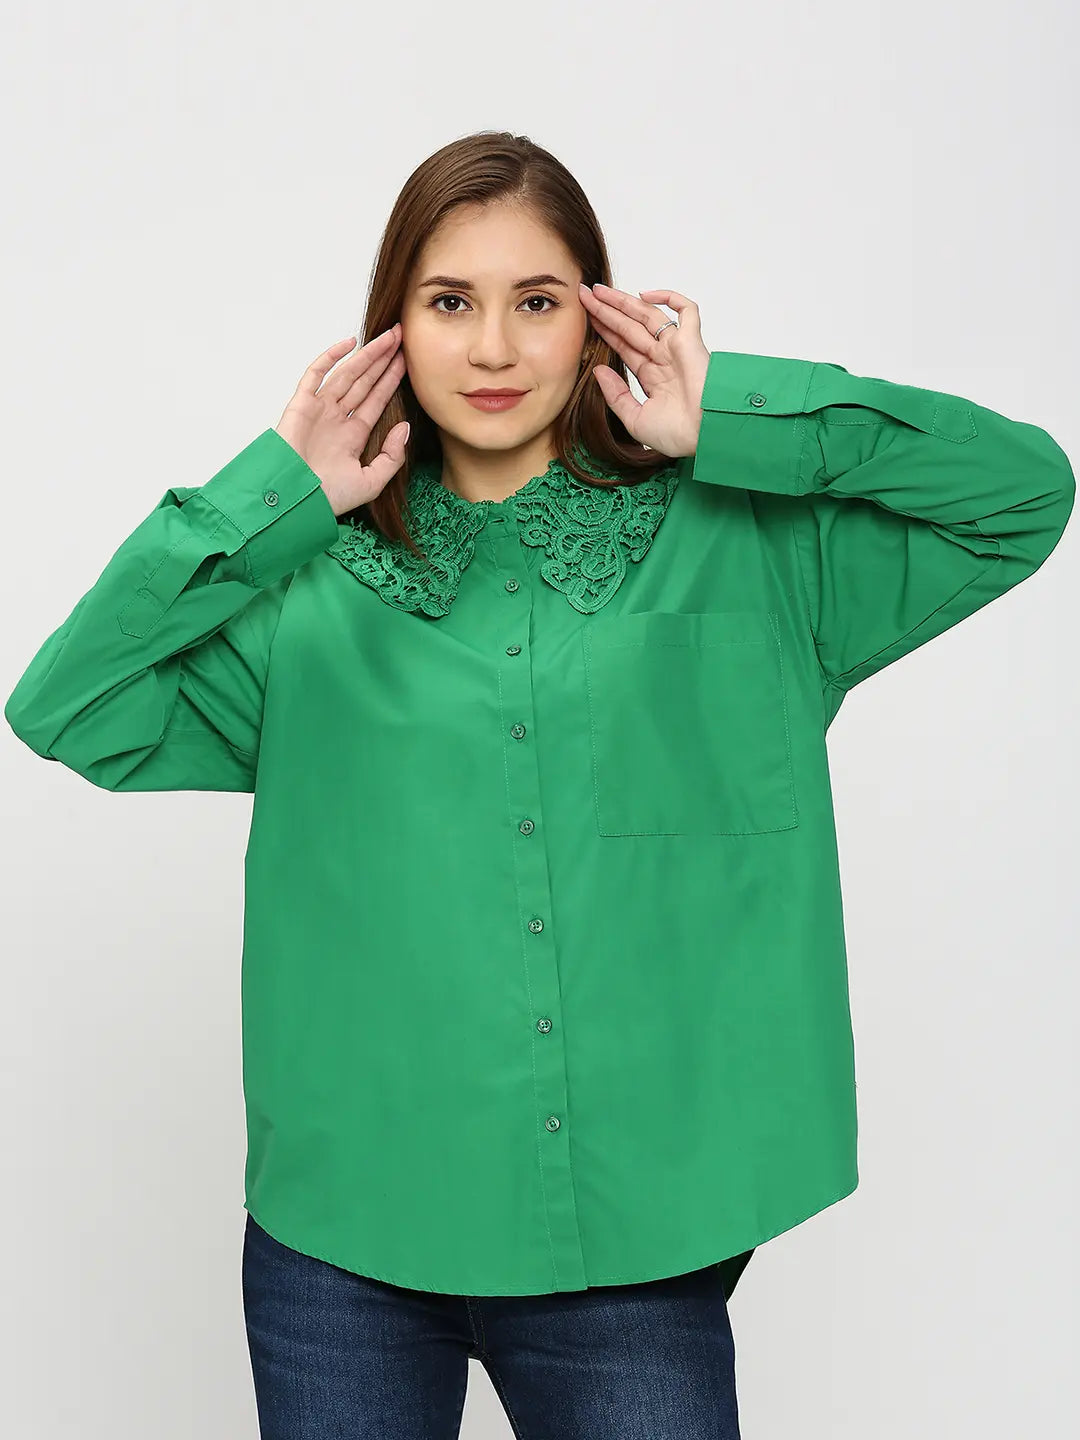 Spykar Women Green Regular Fit Cotton Plain Loose Shirts